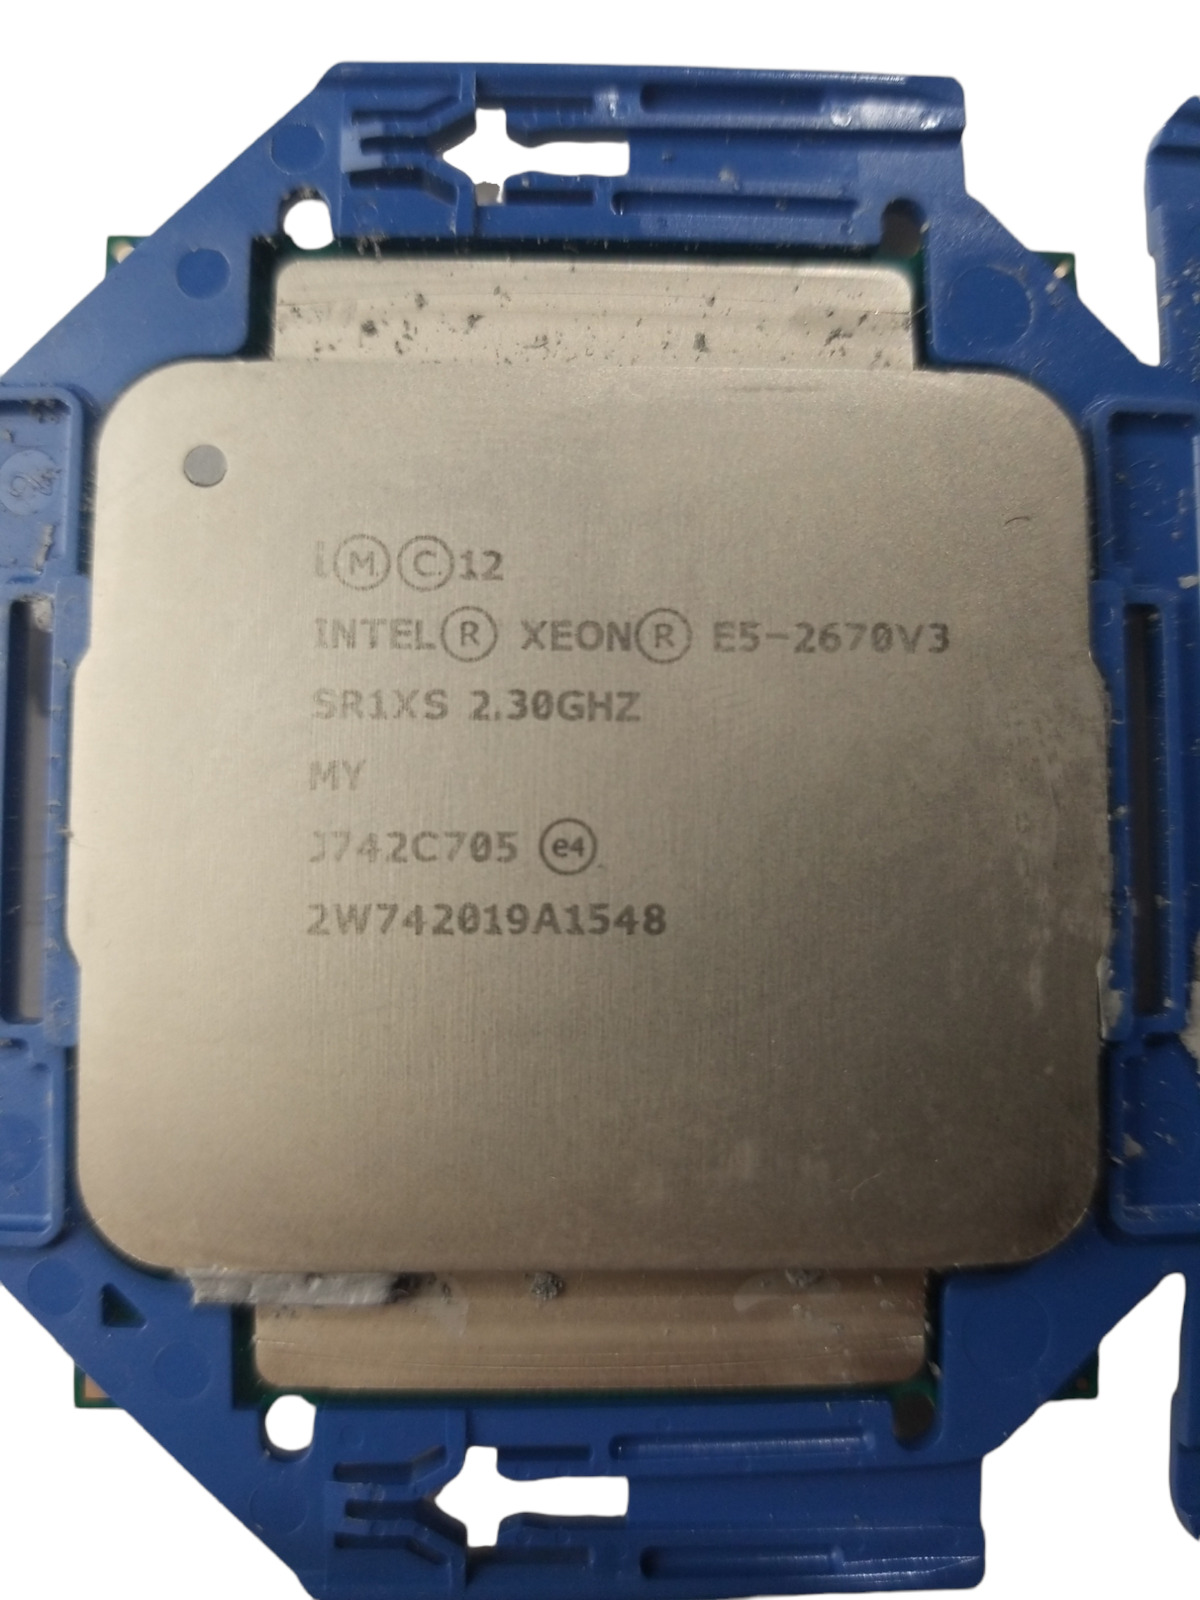 Intel Xeon E5-2670 V3 CPU Processor